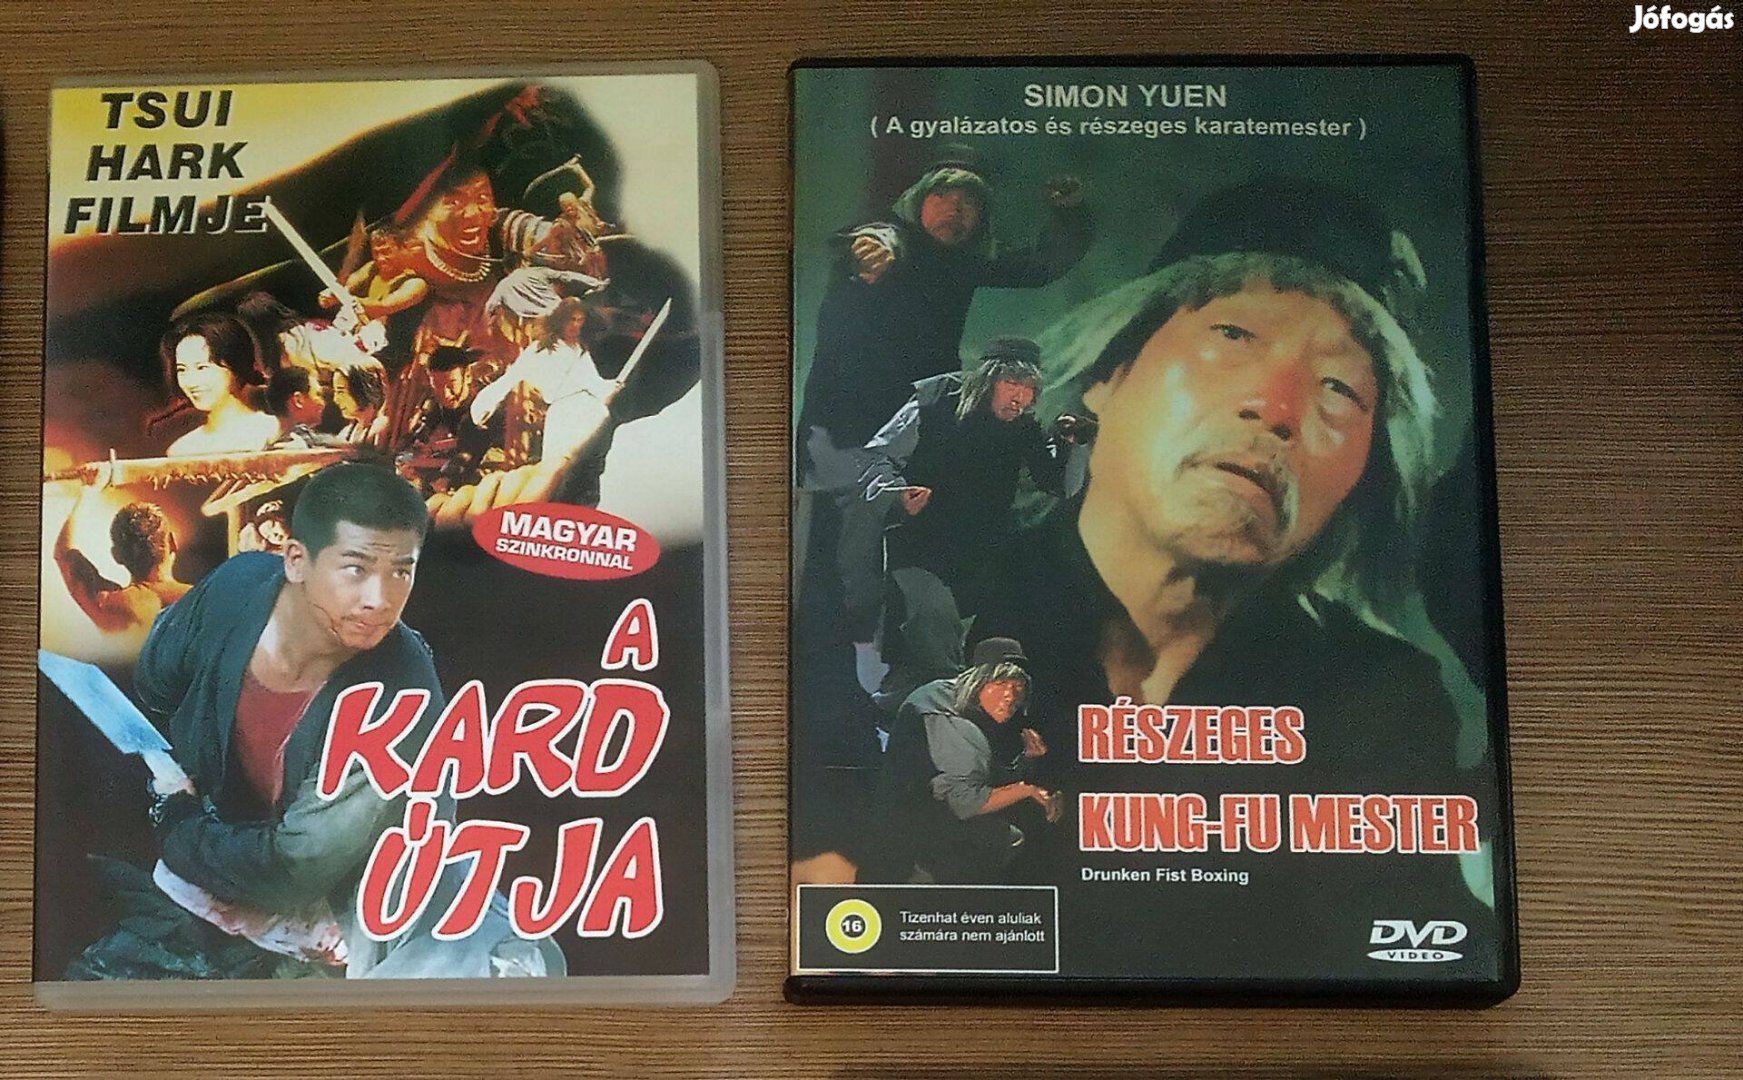 Tradícionális keleti harci filmek DVD-n (A Kard útja, Részeges Kung-fu